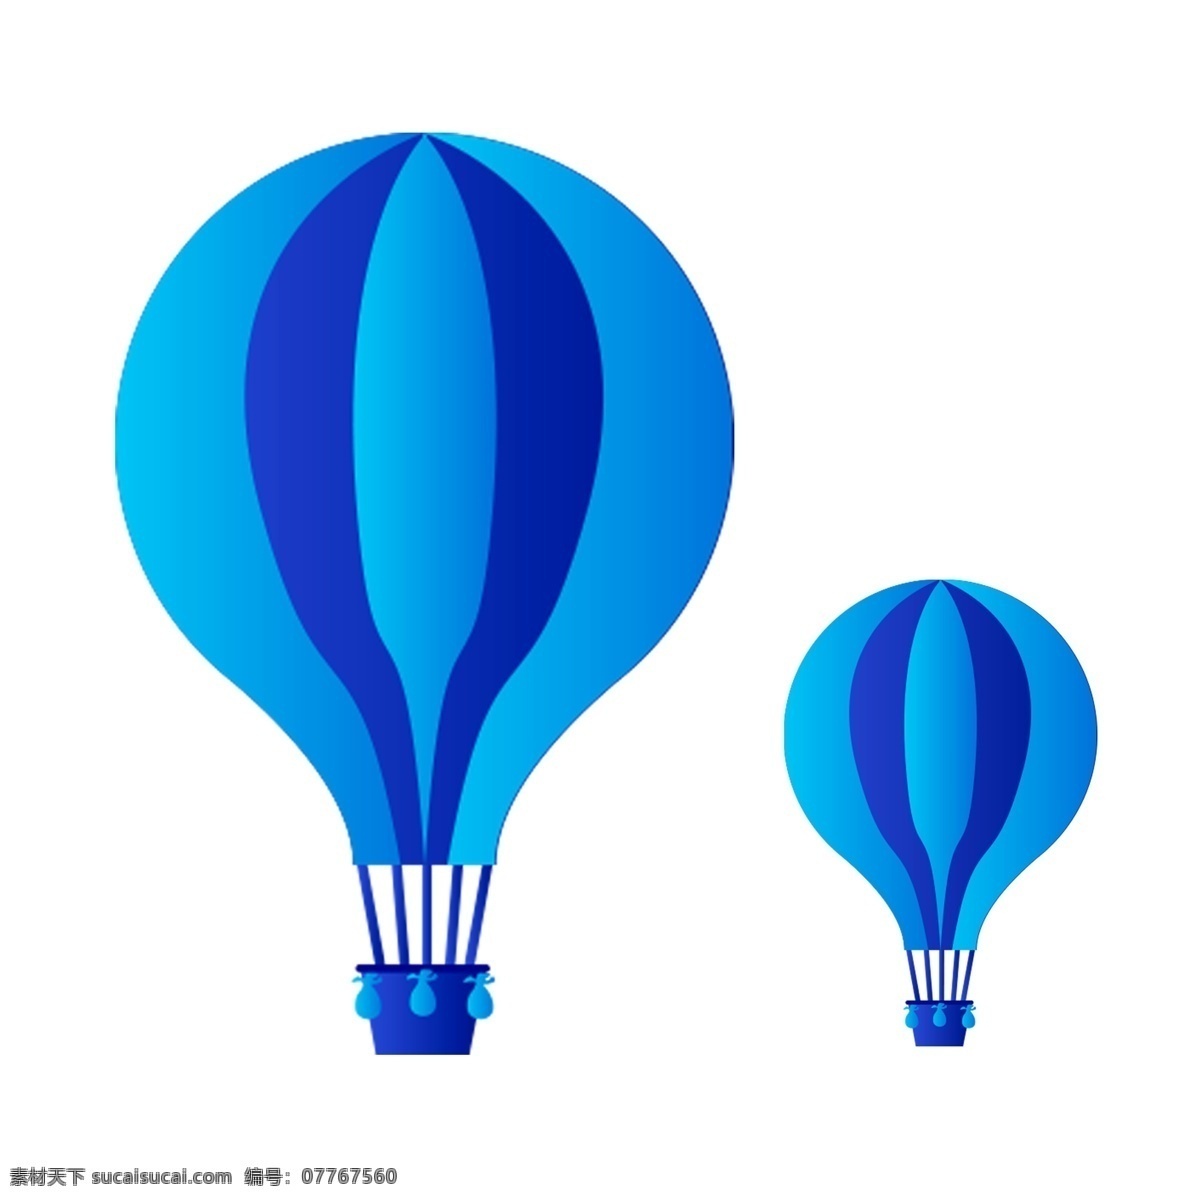 可爱 热气球 卡通 透明 png元素 免抠元素 装饰素材 蓝色